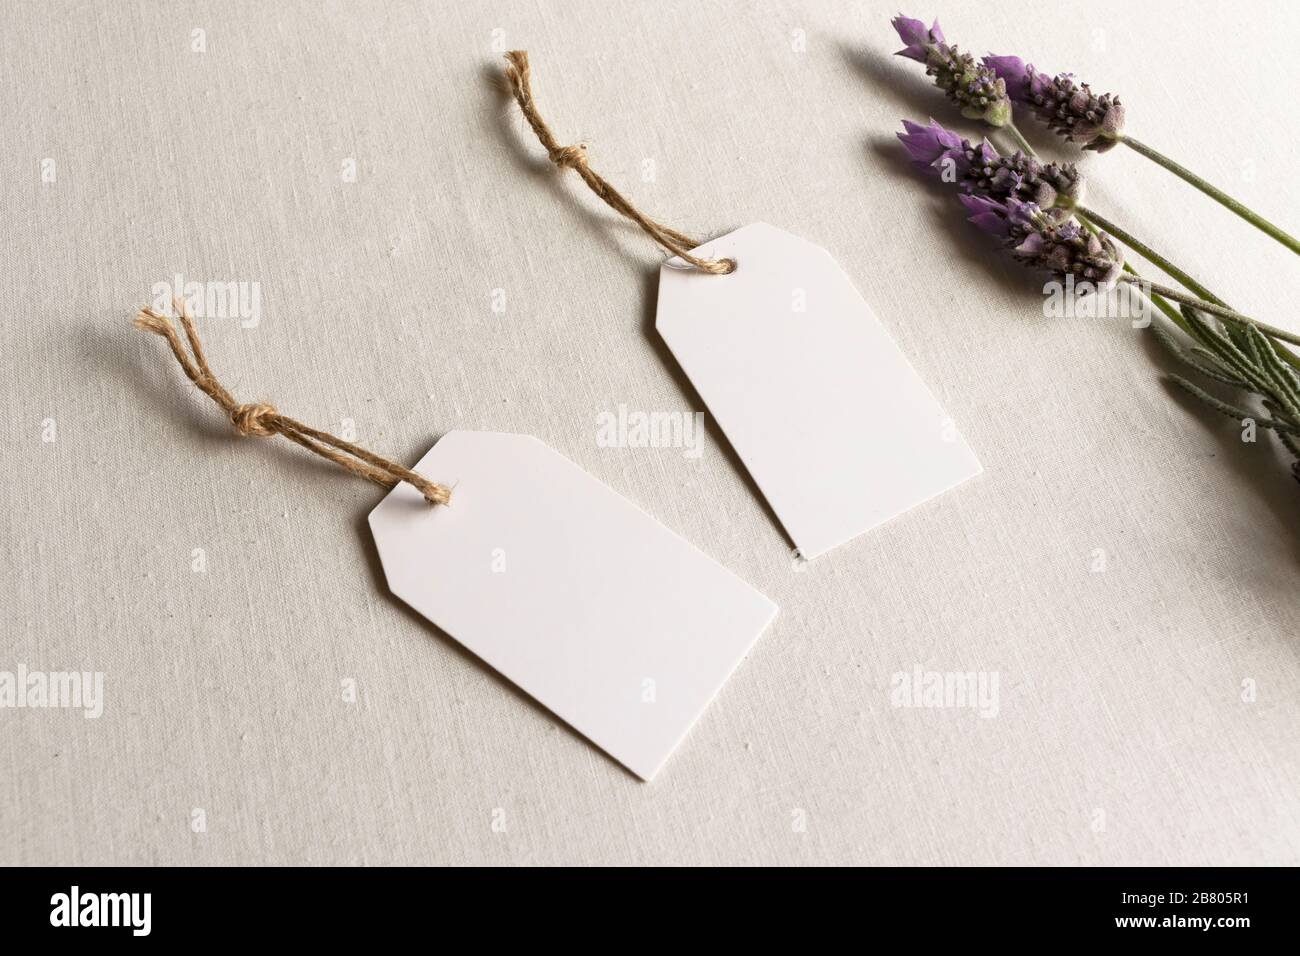 Leerer Geschenkanhänger - zwei weiße Geburtstagsketten für die Hochzeit mit Lavendel und Garn Stockfoto